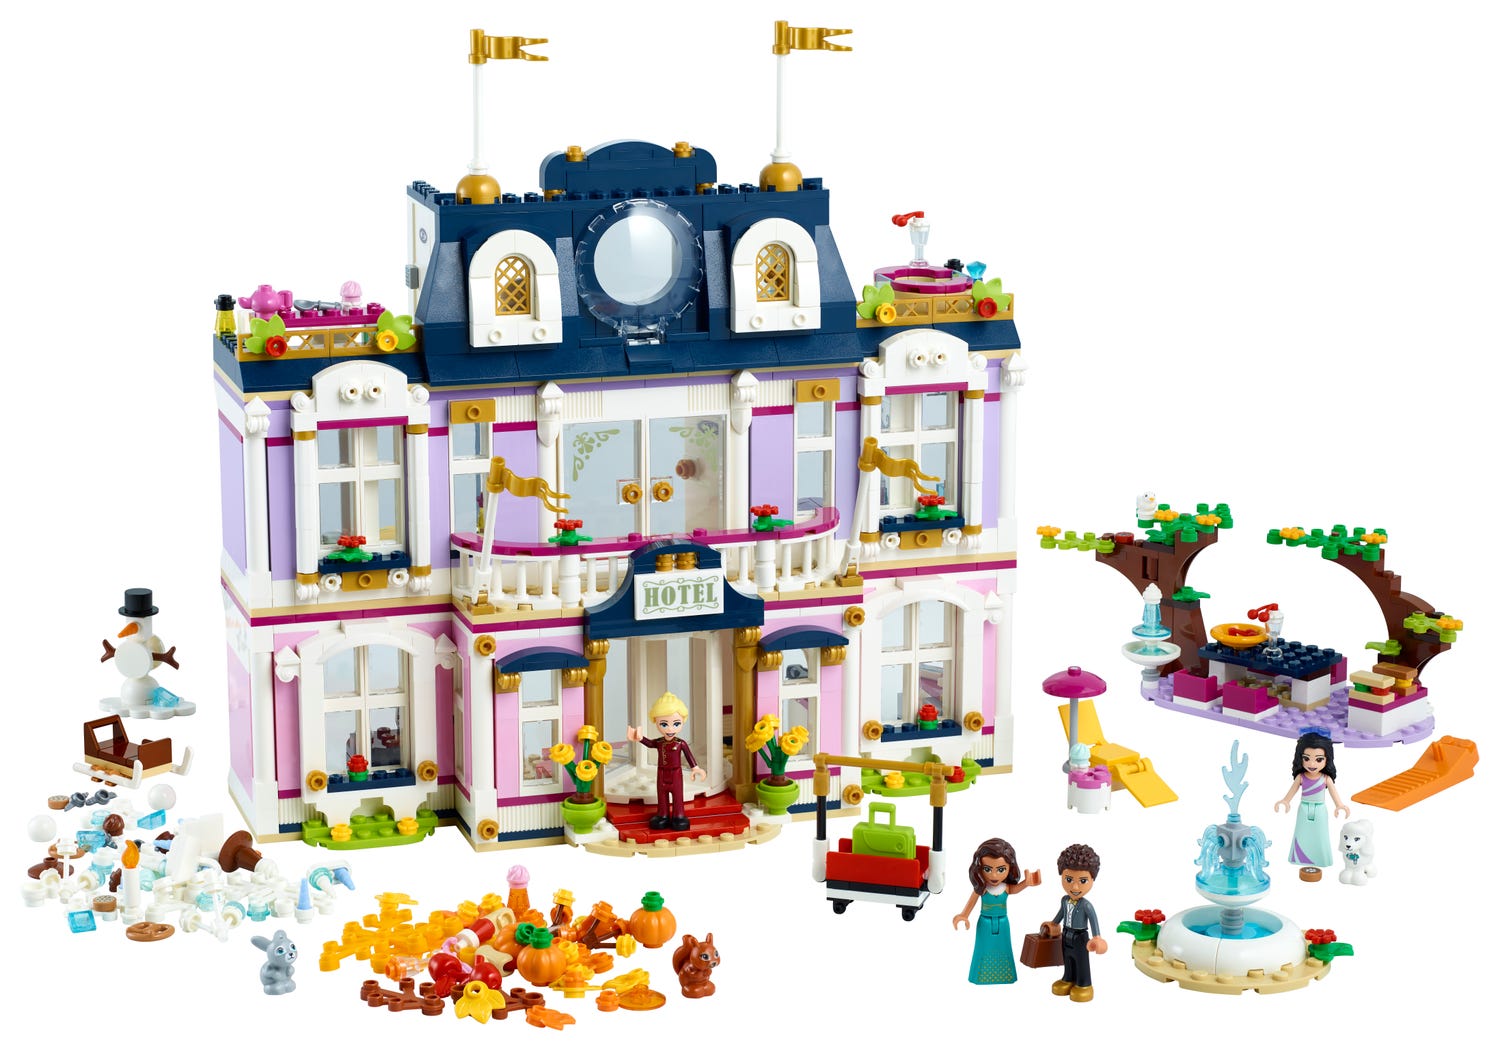 하트레이크 시티 그랜드 호텔 41684 | 프렌즈 | Lego® Shop Kr